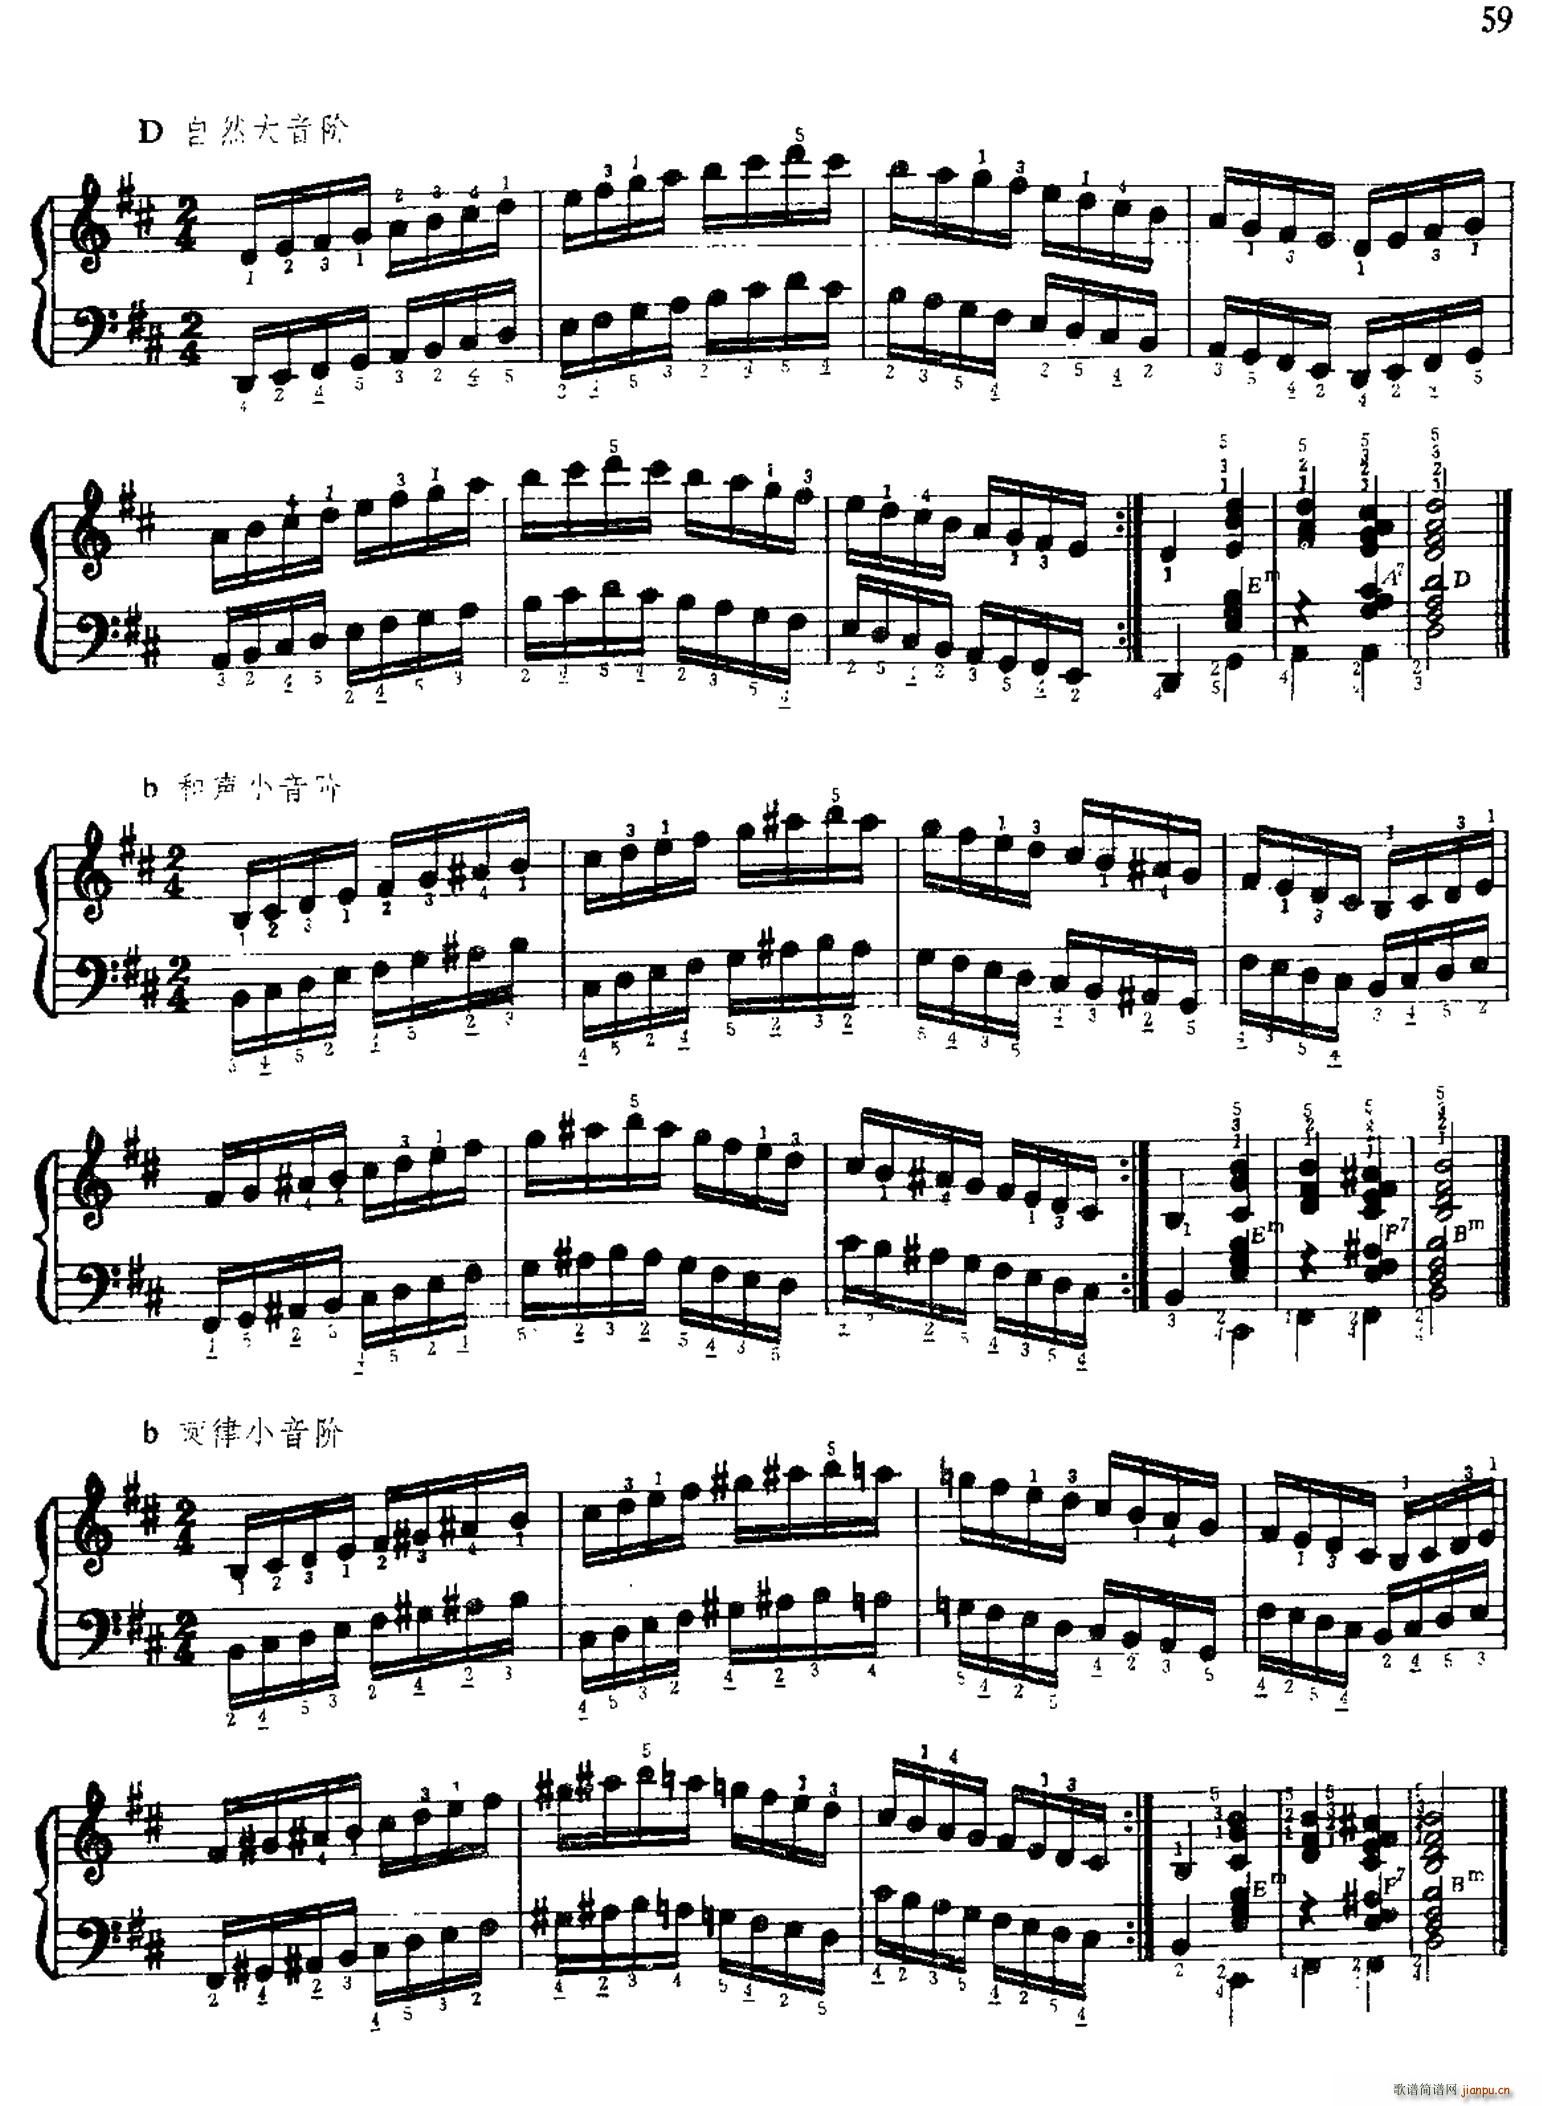 手风琴手指练习 第二部分 十二个大 小音阶的练习(手风琴谱)11